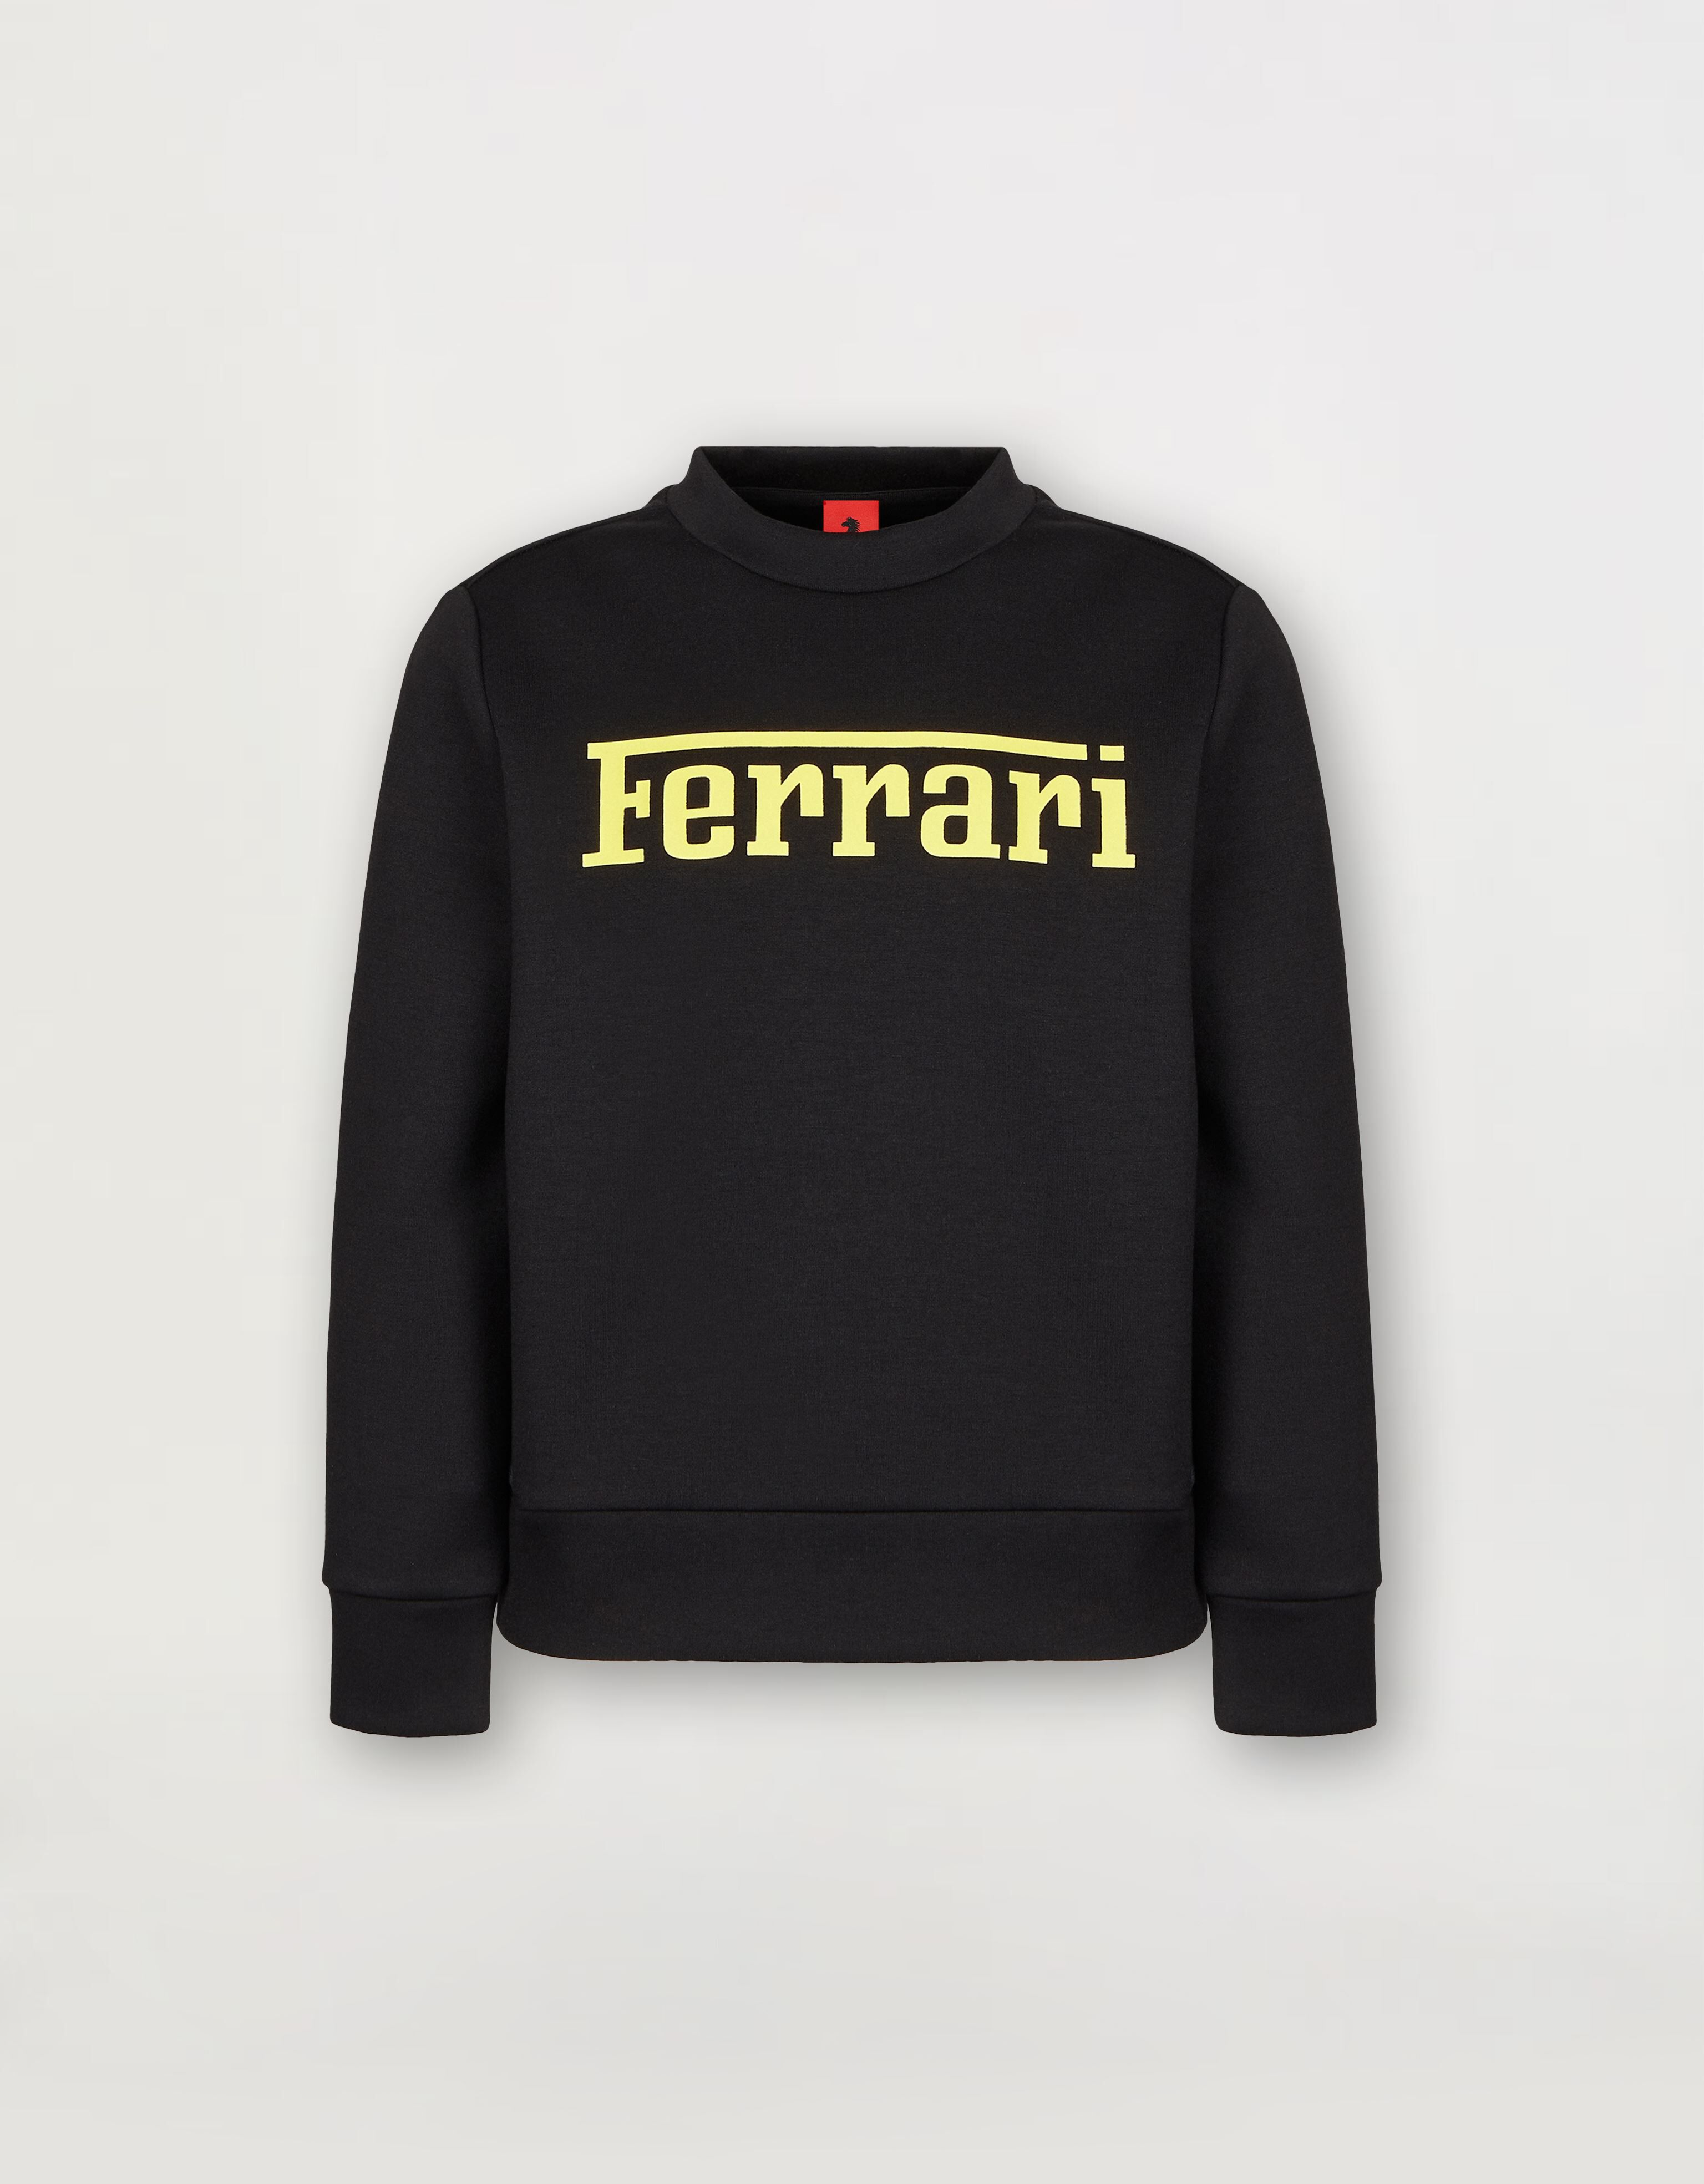 Ferrari Kinder-Sweatshirt aus recyceltem Scuba mit Ferrari-Maxi-Logo Schwarz 46994fK